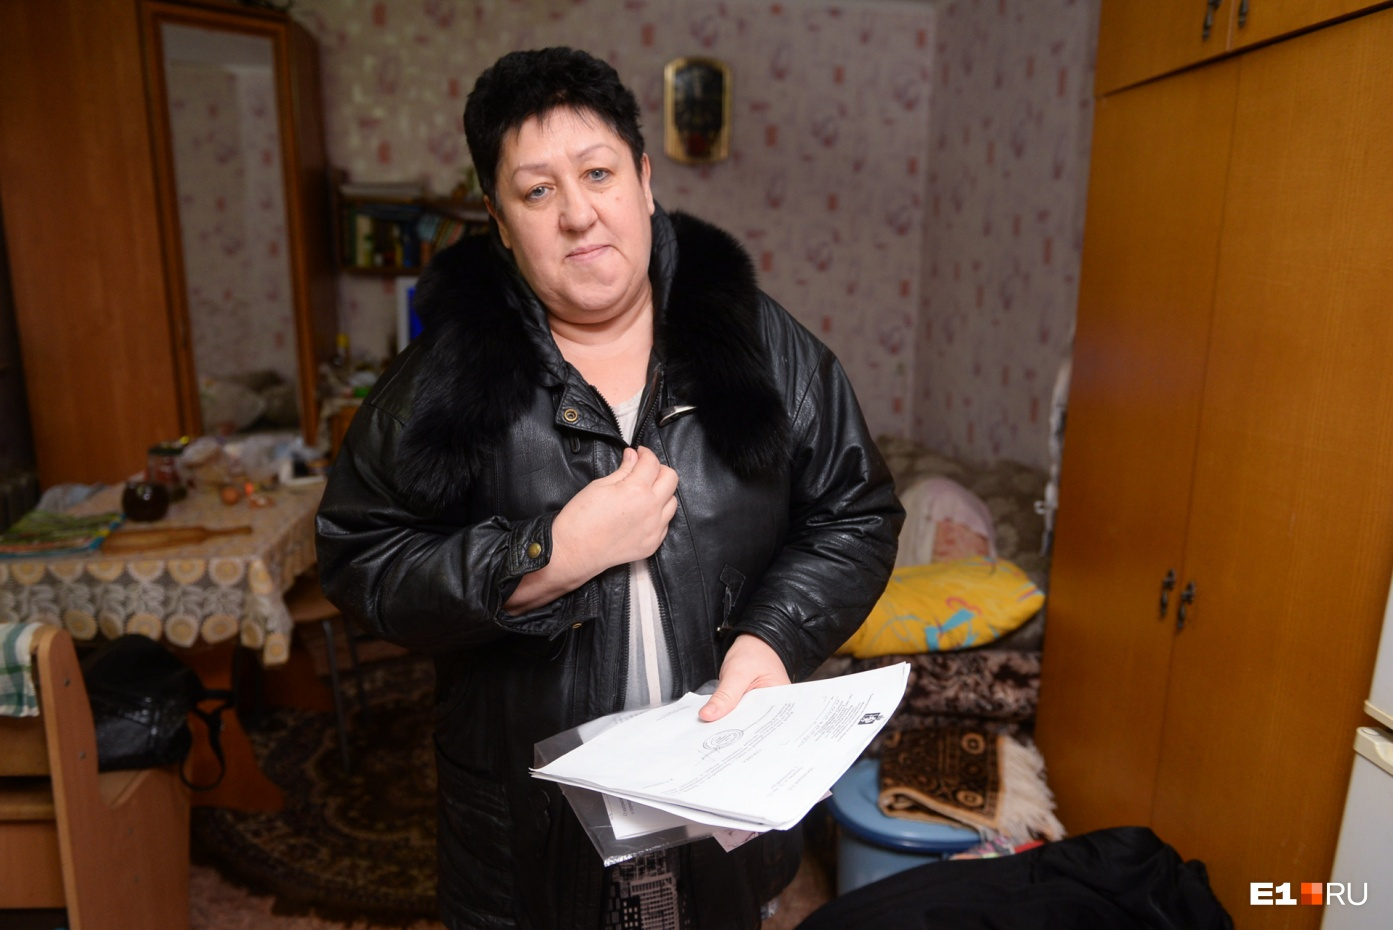 Людмила Егоровна 20 лет живет в этой комнате: она досталась ей от мужа